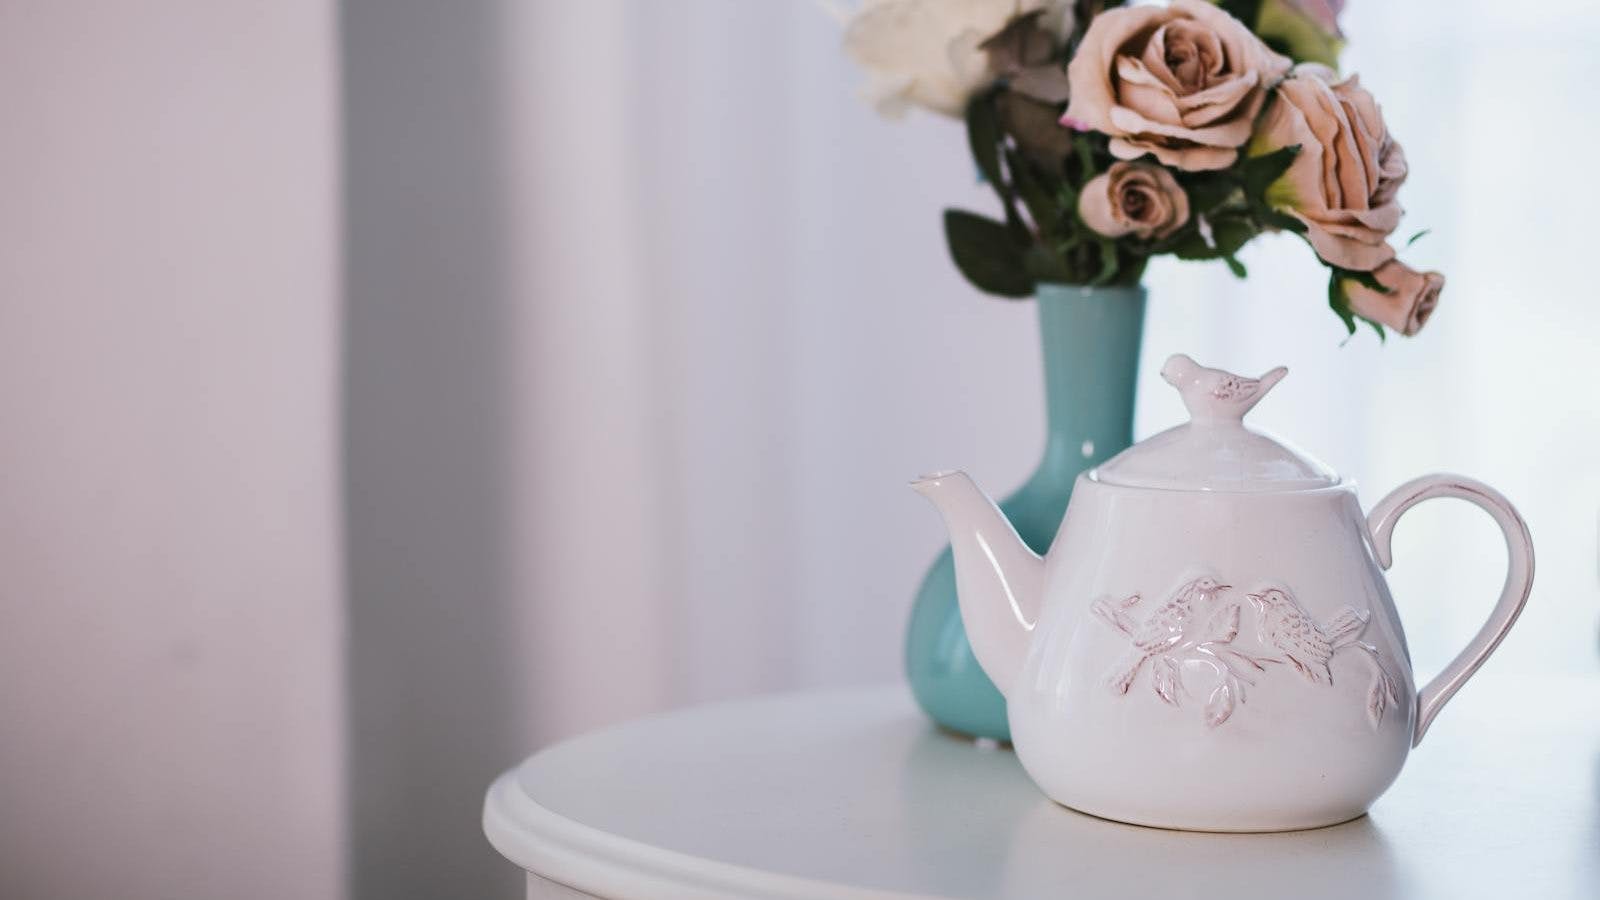 White Ceramic Teapot Near Flower Arrangement on White Surface